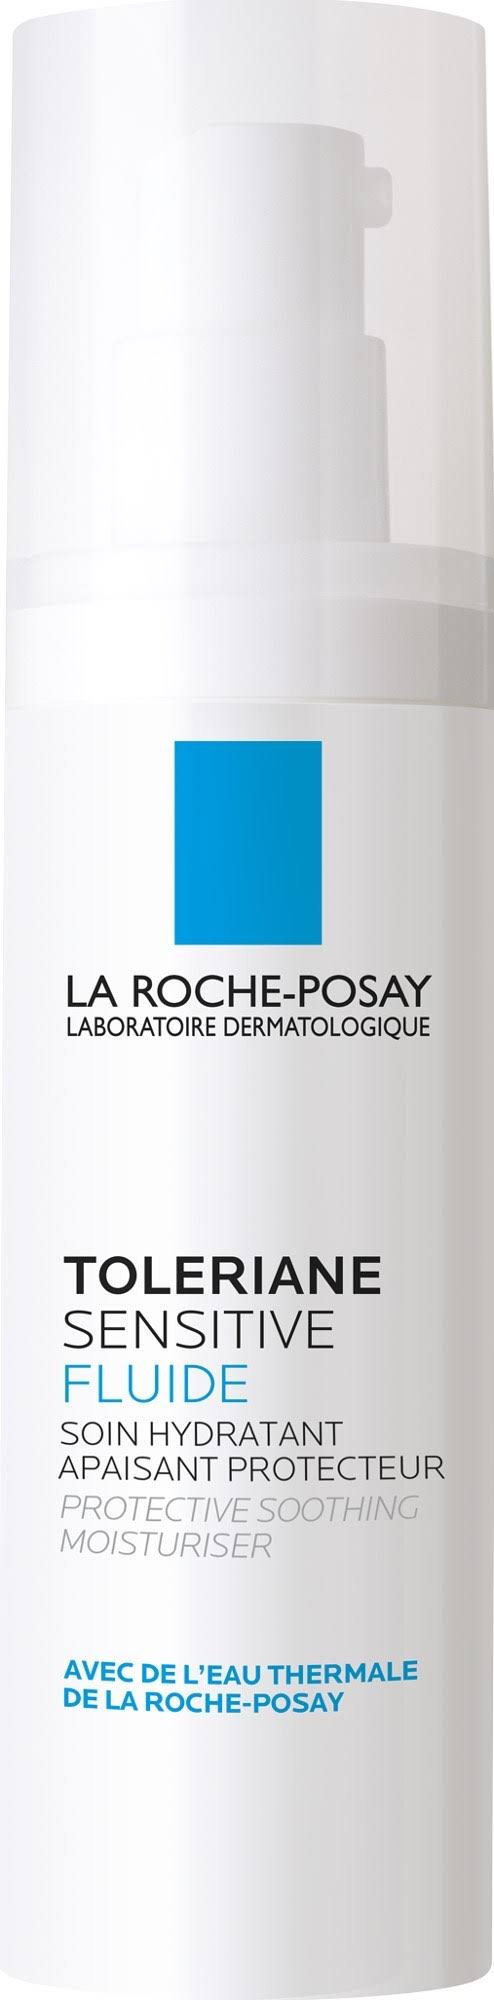 La Roche Posay Toleriane Sensitive Fluid - 40ml